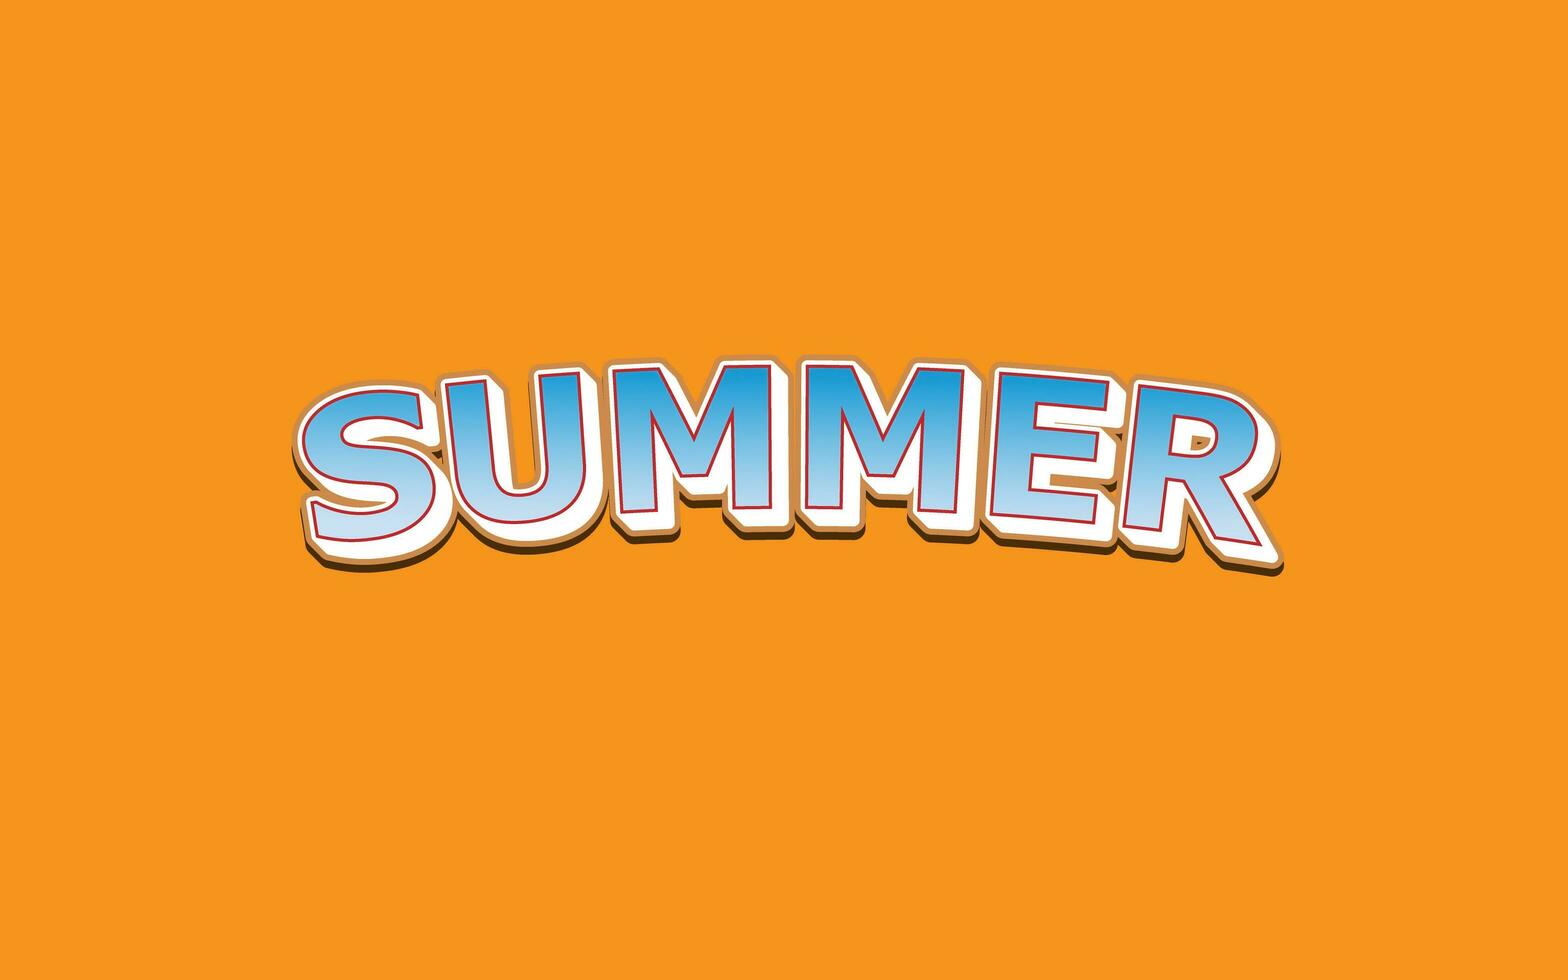 Summer text effect photo